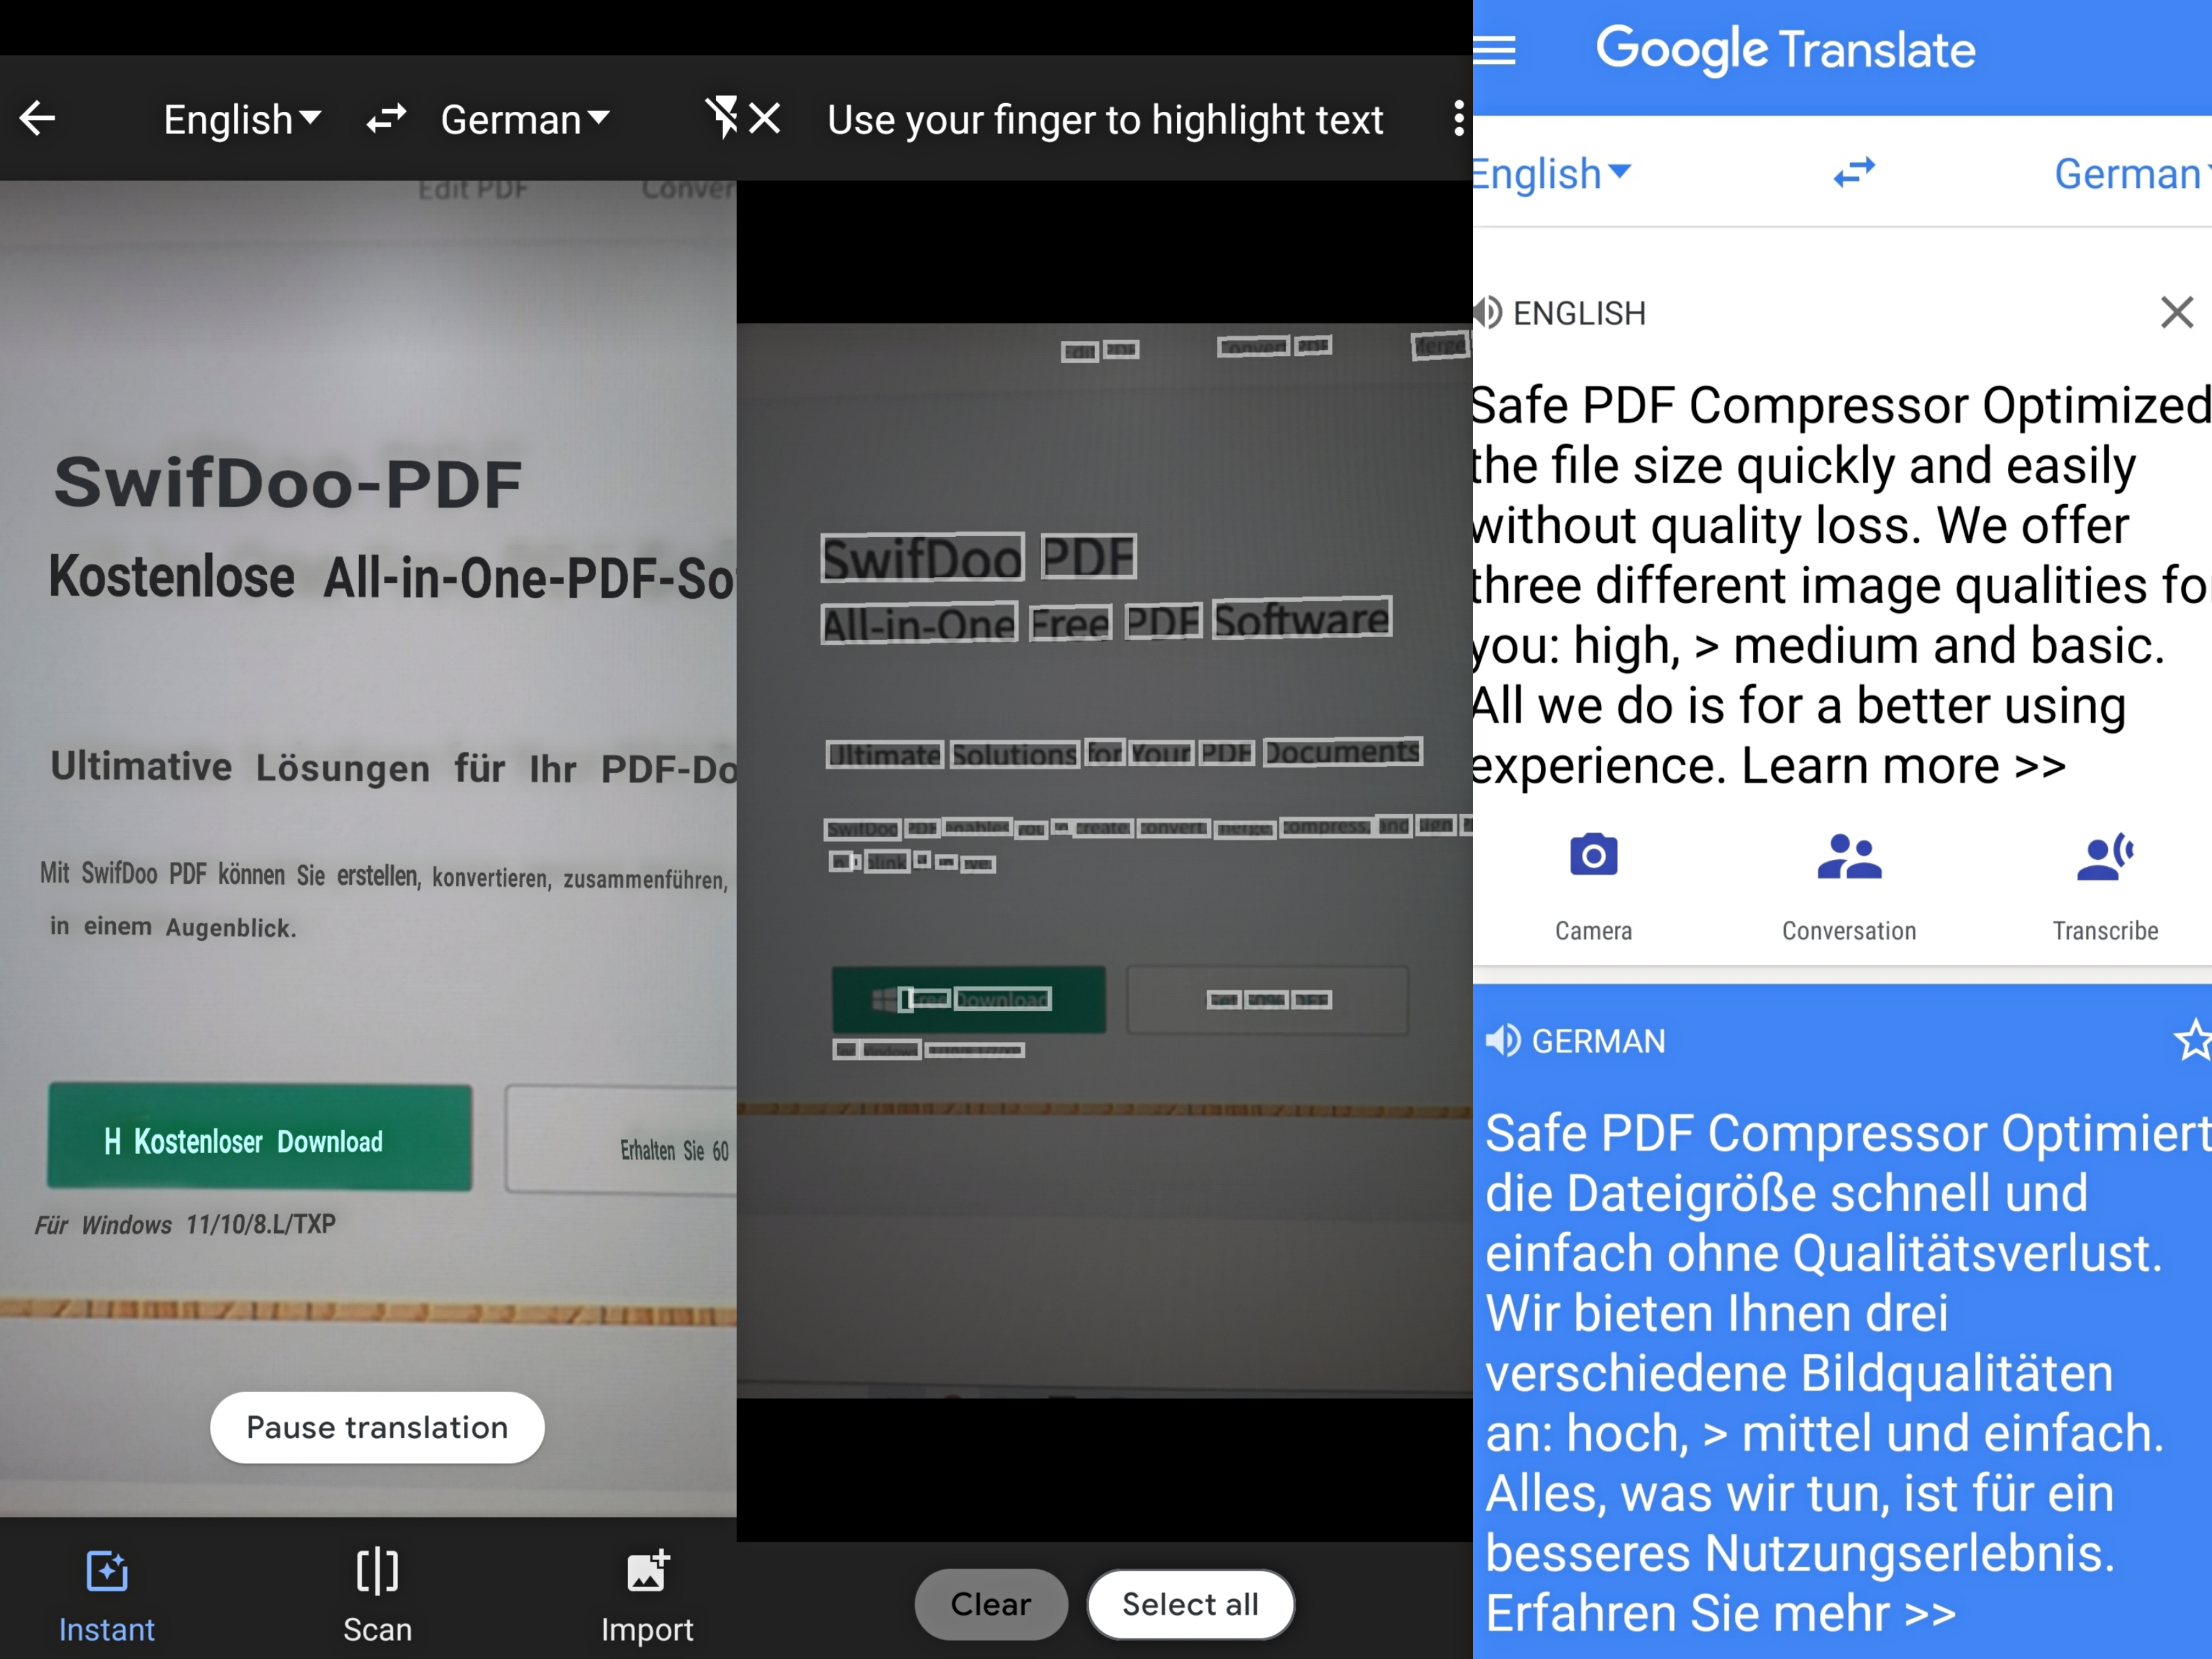 how-to-use-google-translate-camera